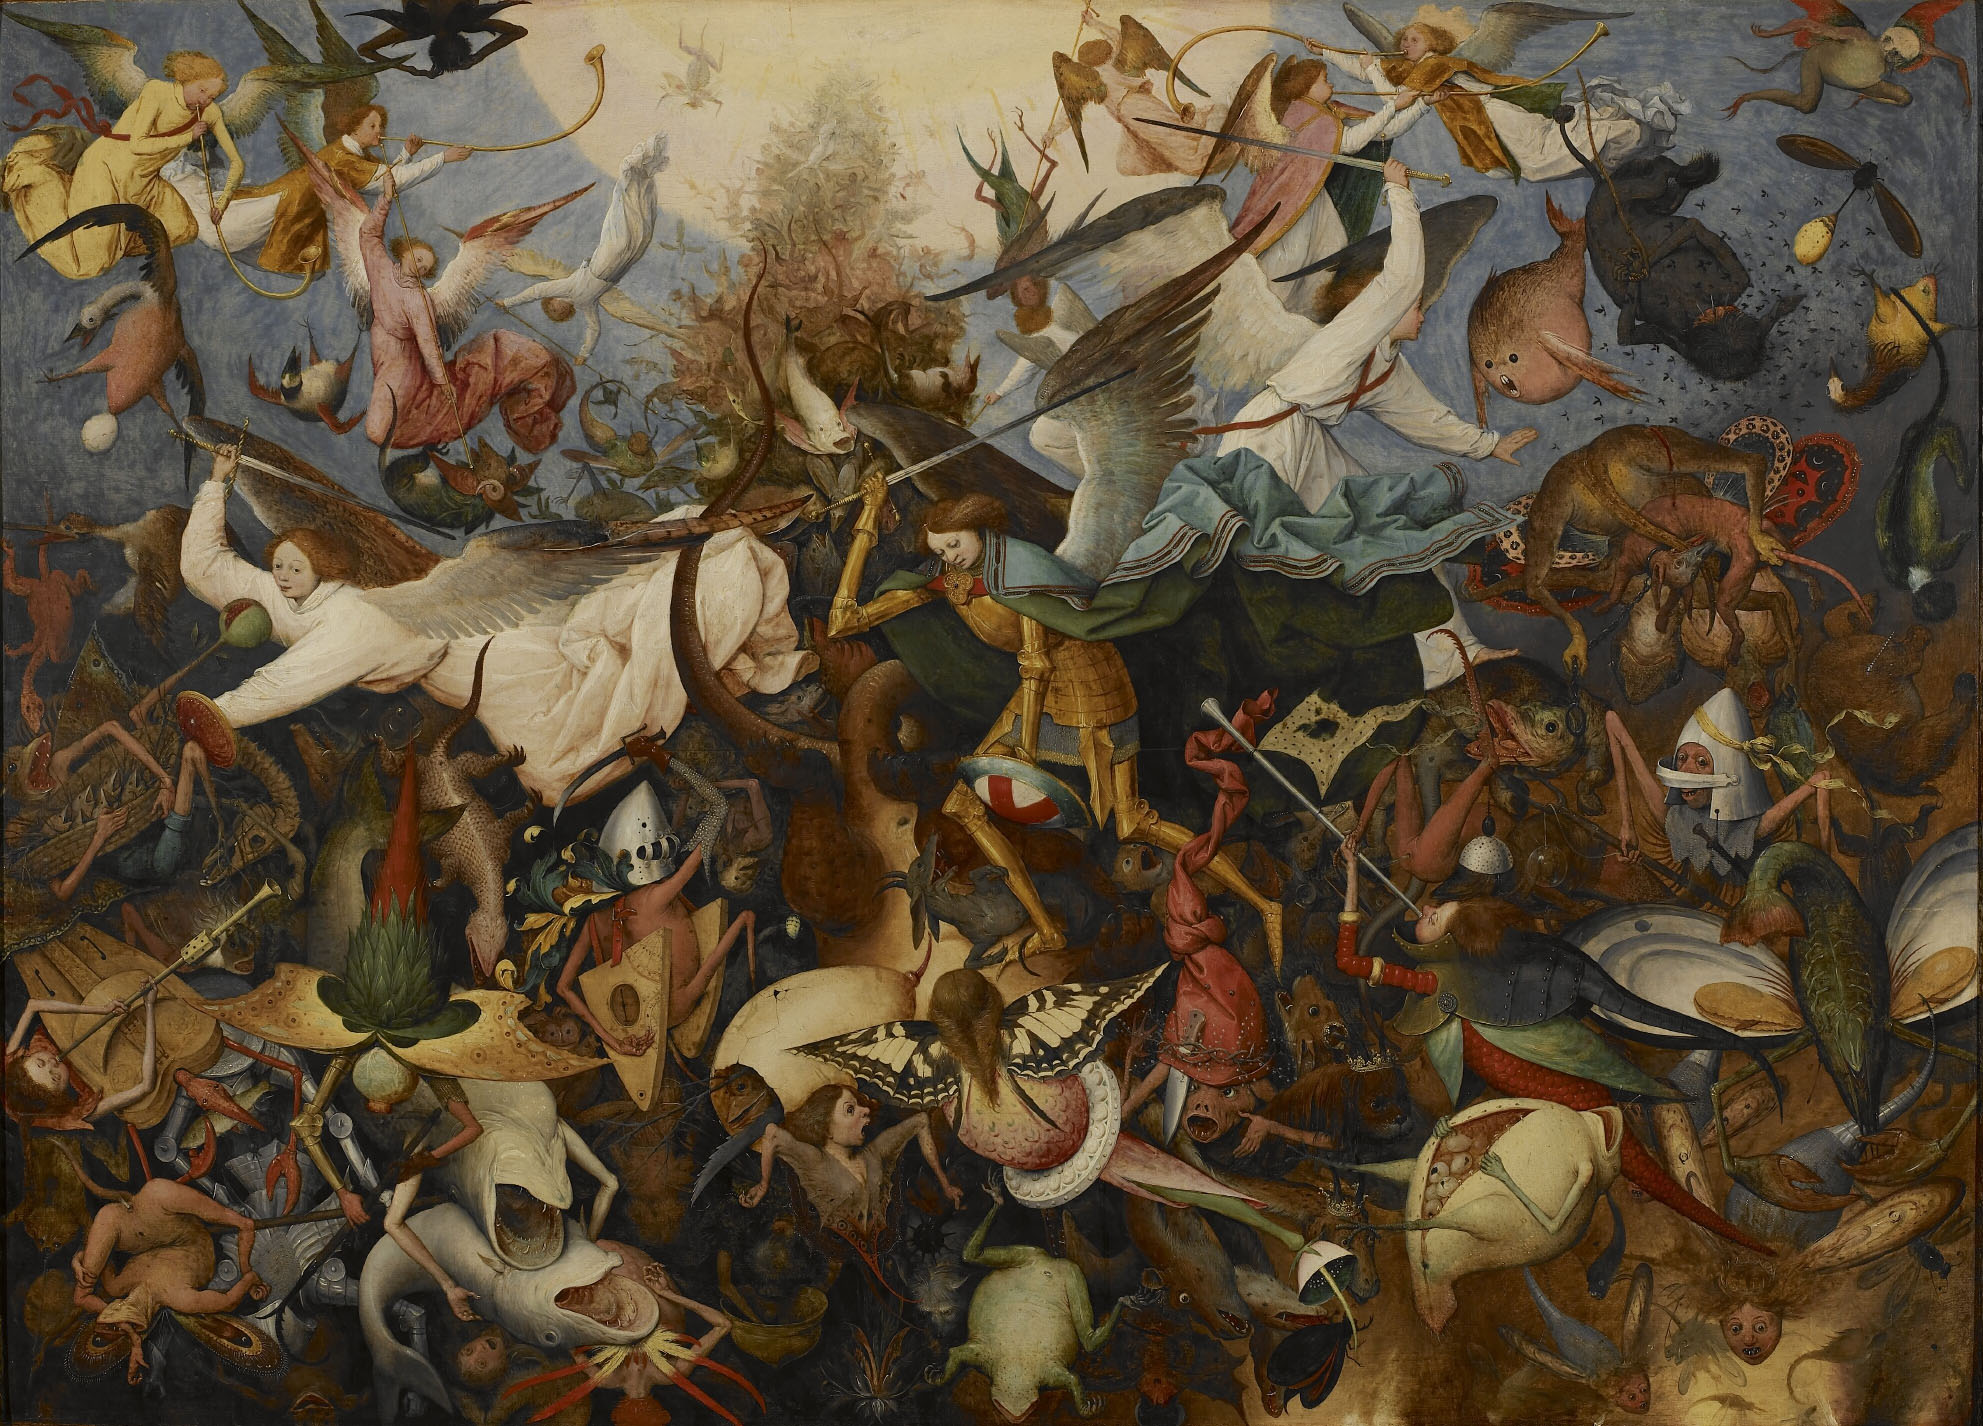 La caída de los ángeles rebeldes by Pieter Bruegel el Viejo - 1562 - 162 x 117 cm Musées Royaux des Beaux-Arts de Belgique